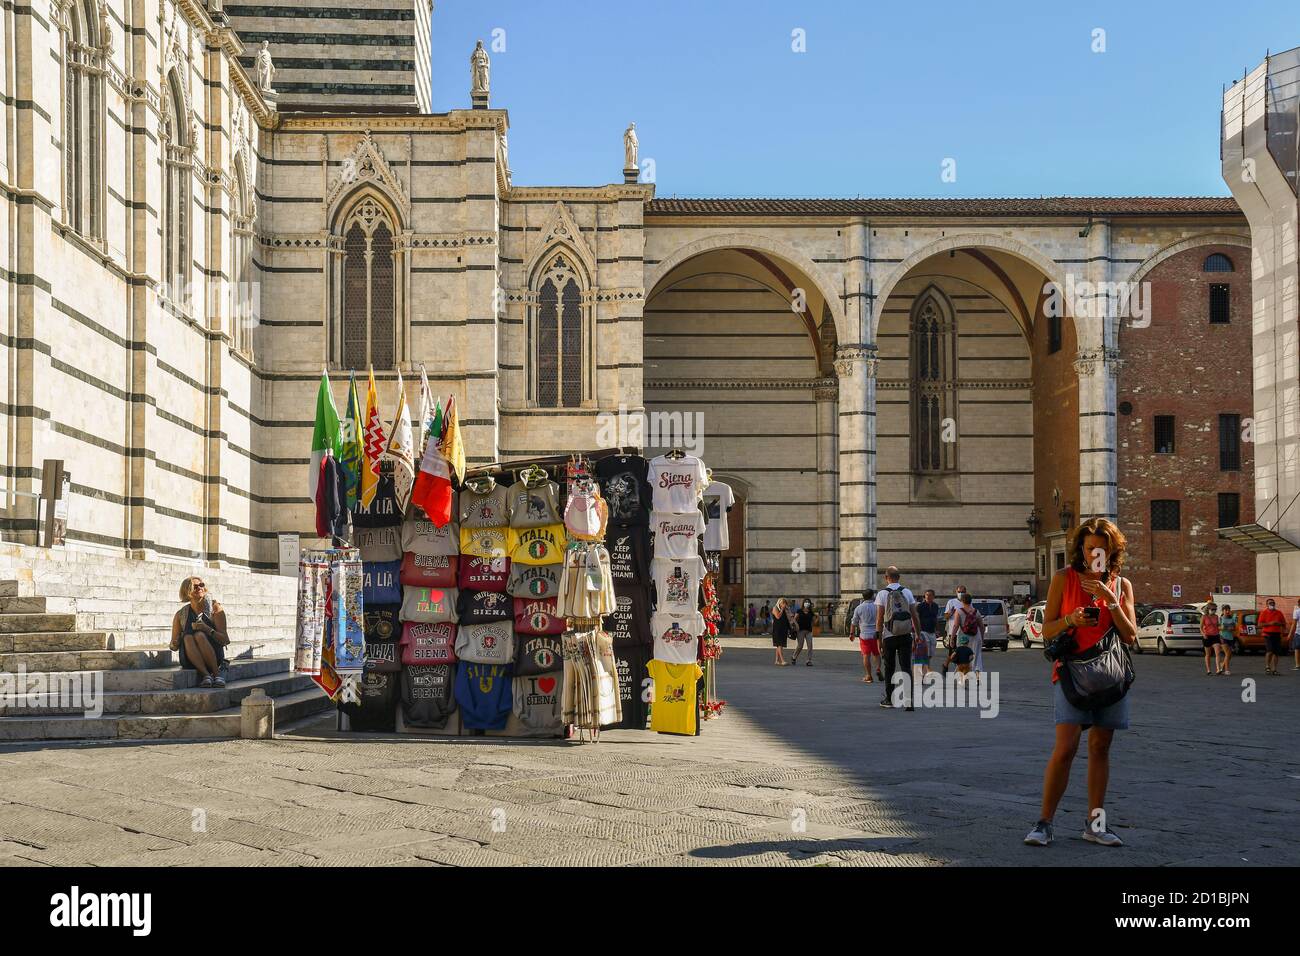 Côté droit et nef inachevé de la cathédrale de Sienne, dans le centre historique de l'UNESCO W. H. site, avec une cabine souvenir et des touristes, Toscane, Italie Banque D'Images